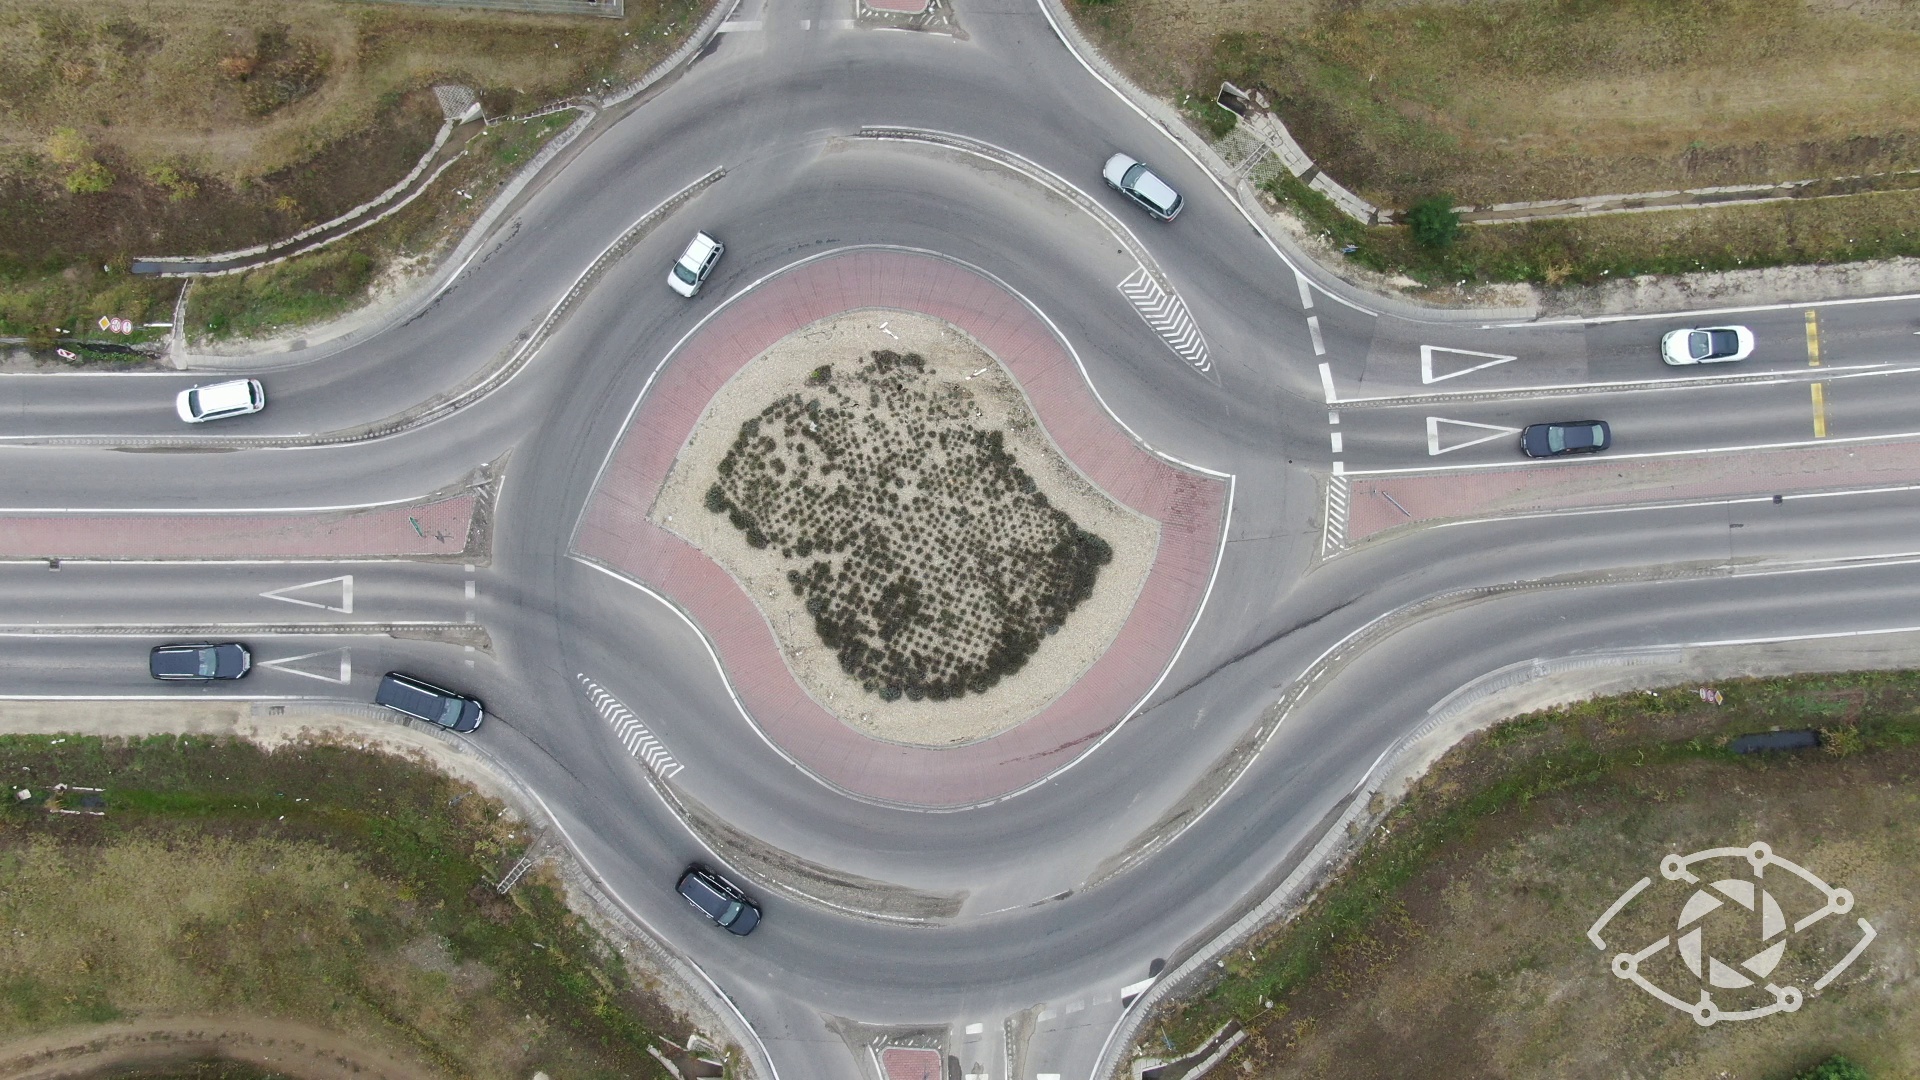 Drónos légi felvétel a lakott területen kívüli forgalomról.